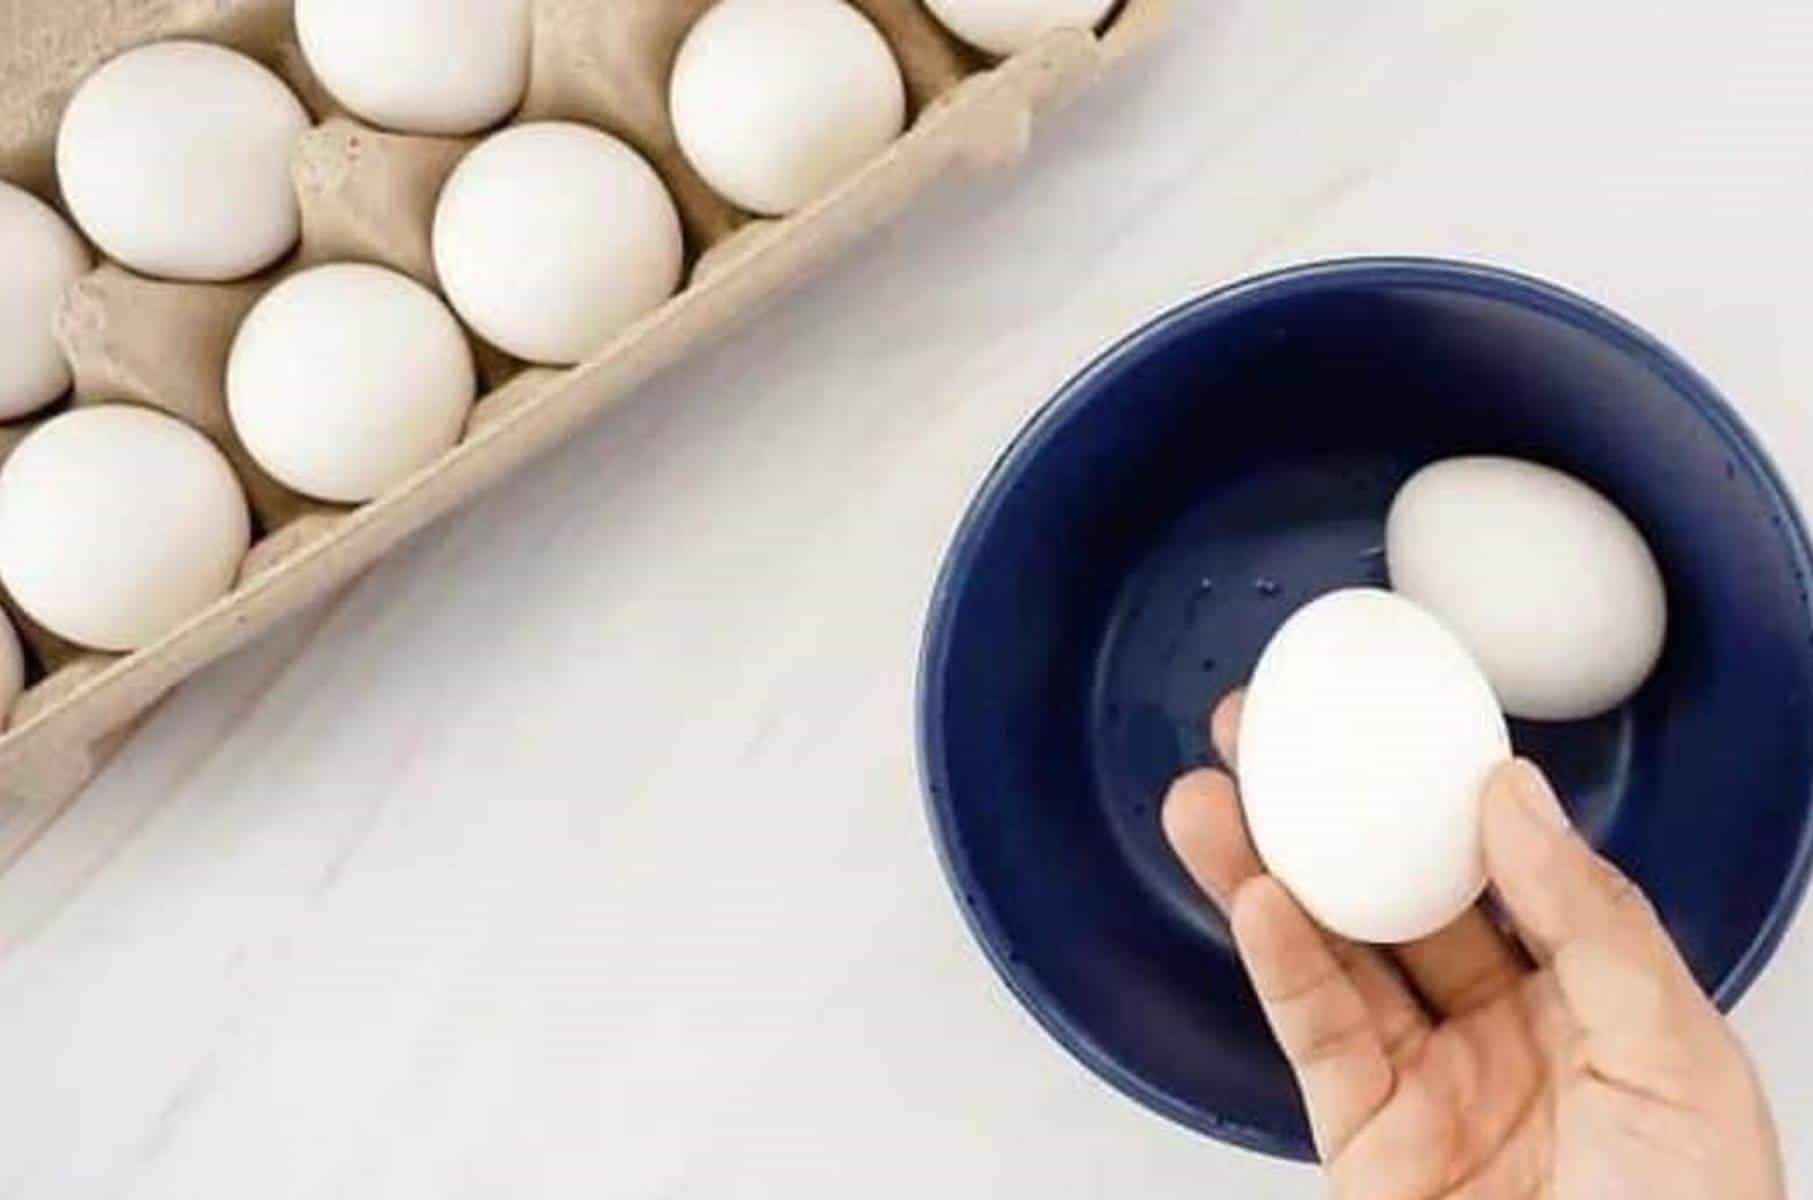 Método inovador: ovos fritos com microondas em apenas 1 minuto!